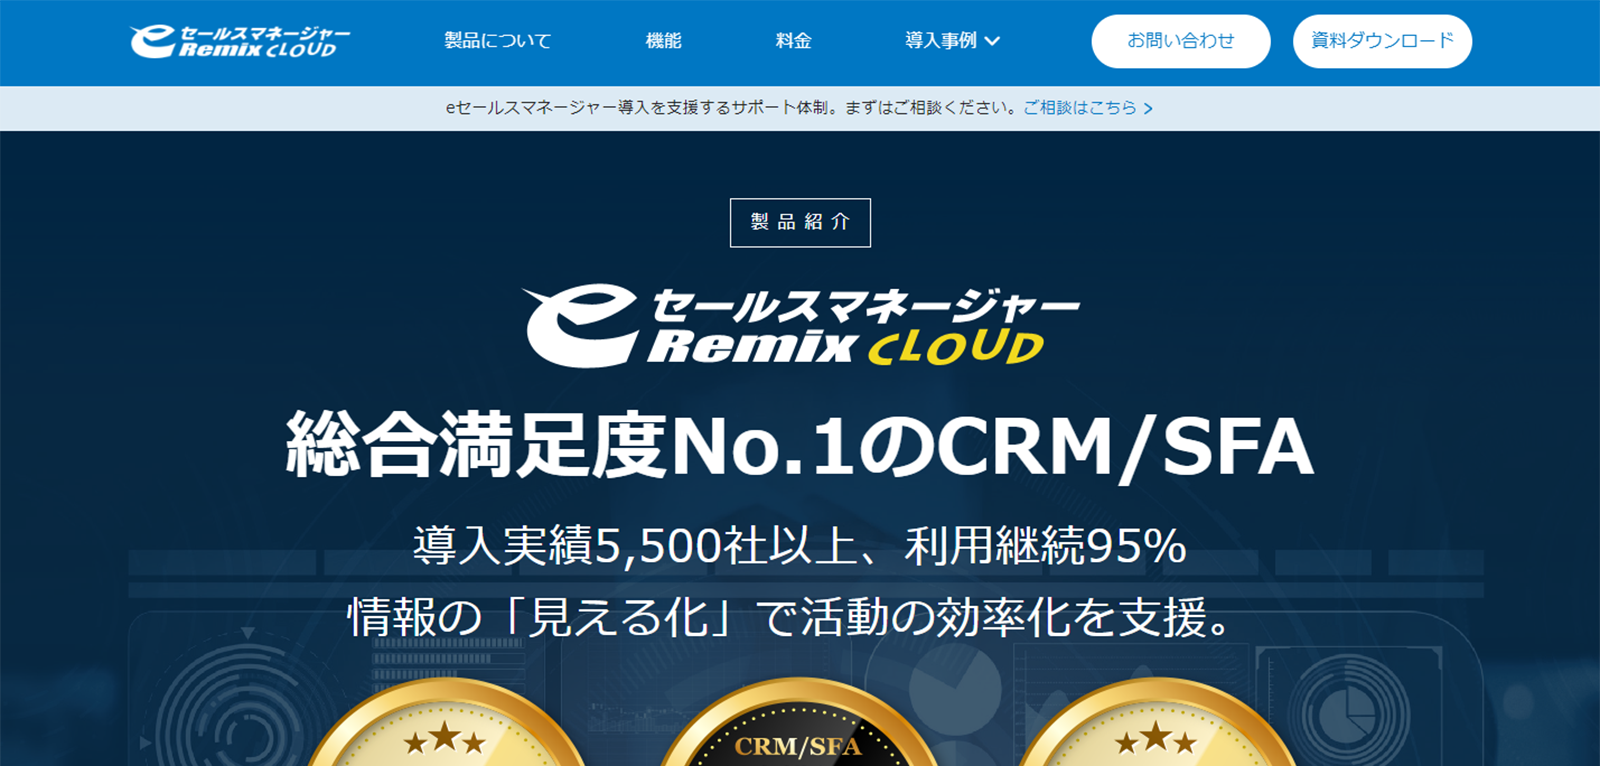 eセールスマネージャー Remix Cloudのwebサイト